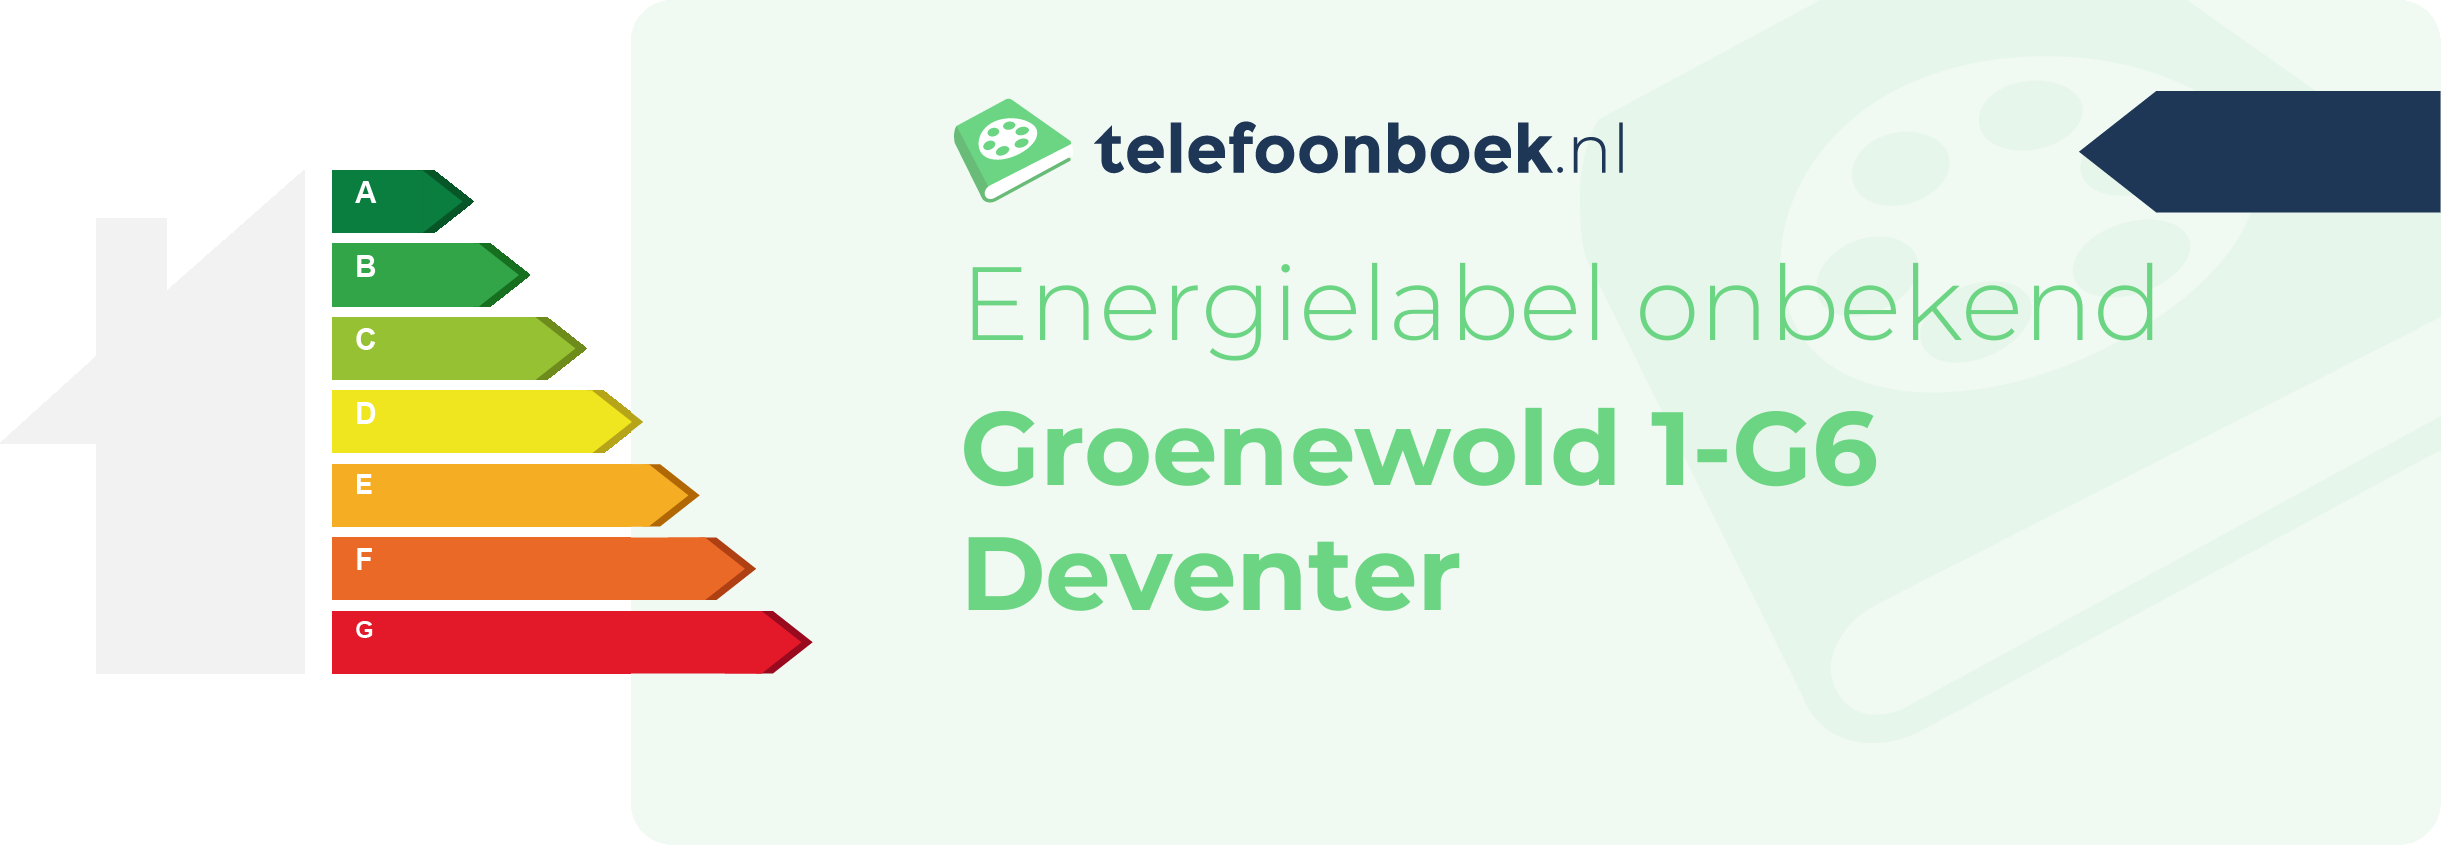 Energielabel Groenewold 1-G6 Deventer